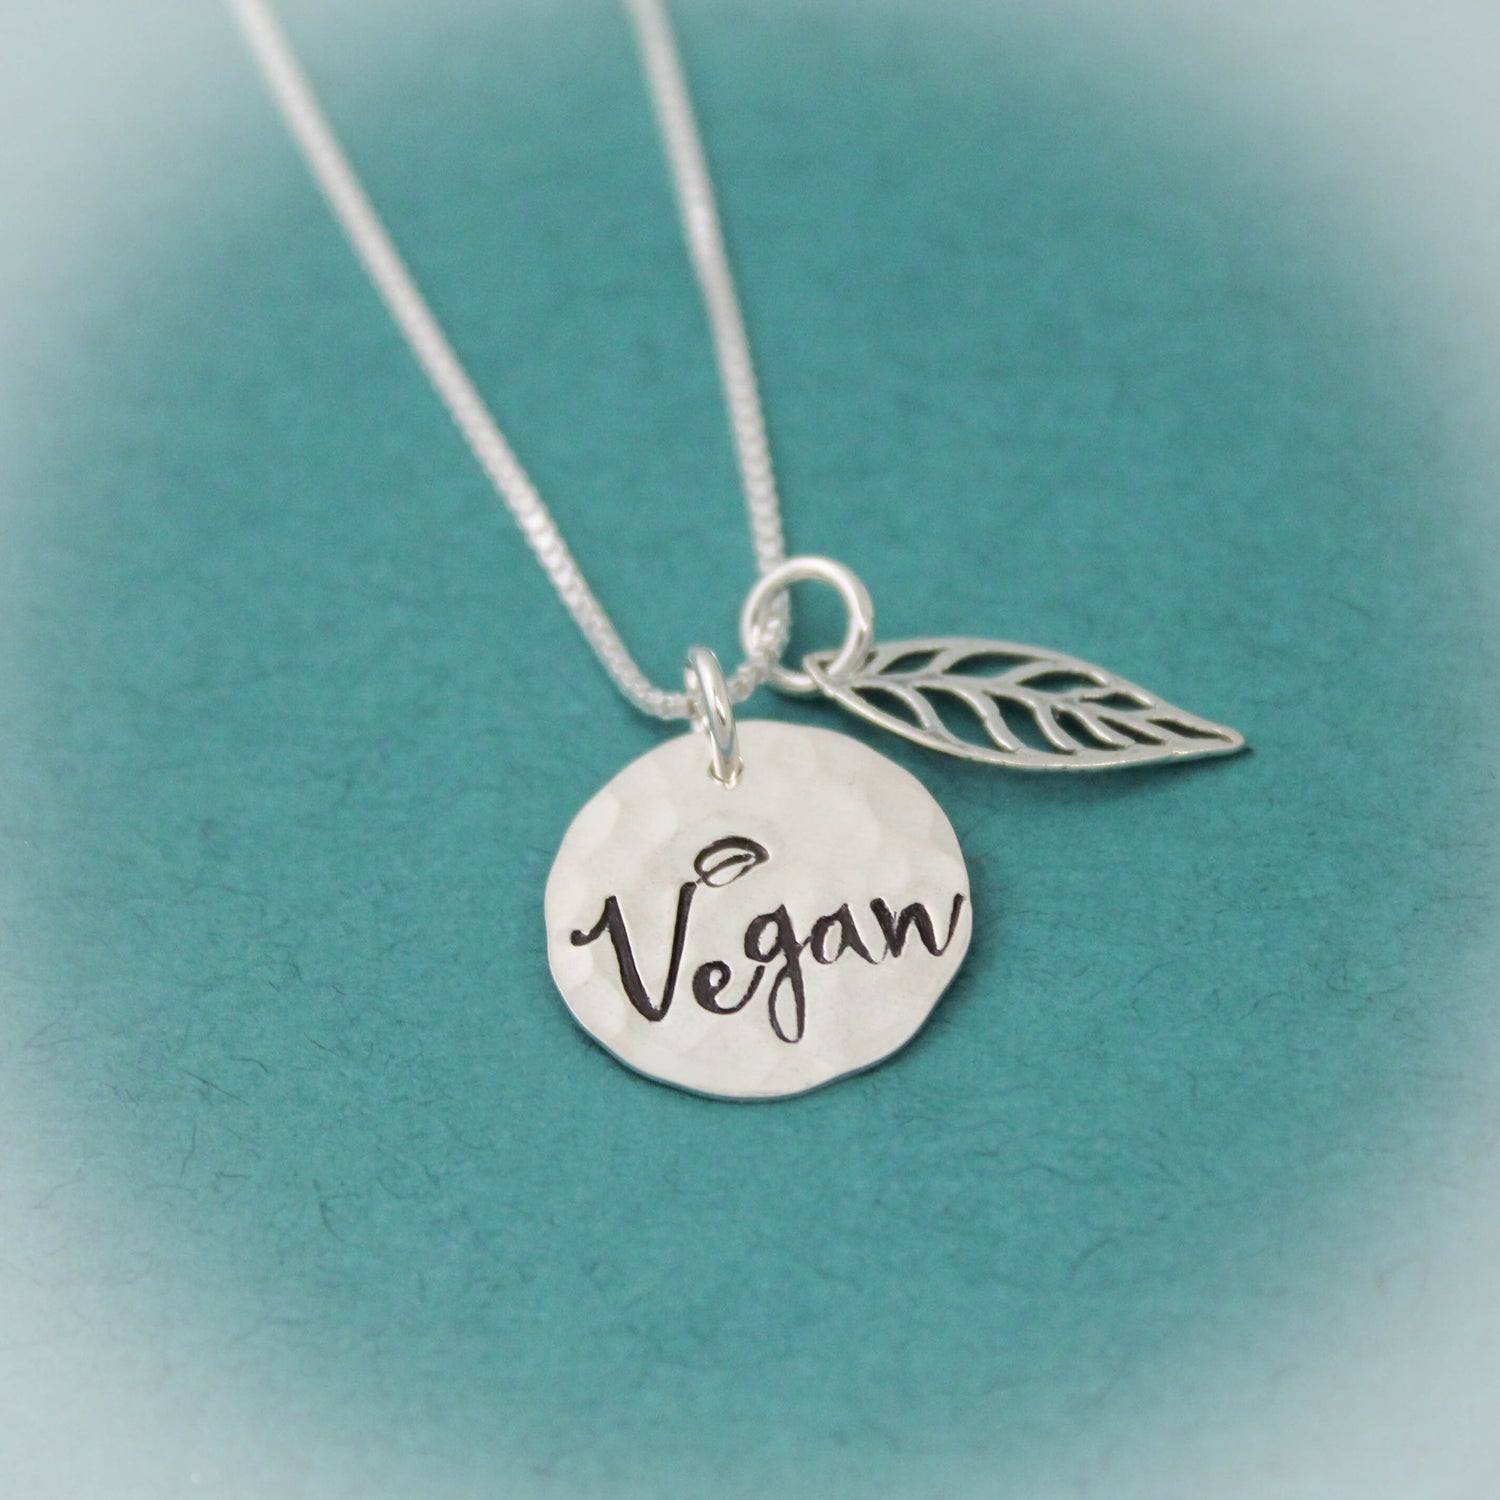 Vegan Leaf Necklace, Vegan Pride Necklace, Vegan Jewelry, Gift for Vegans, Sterling Silver Vegan Necklace, Animal Lover Gift, Vegetarian